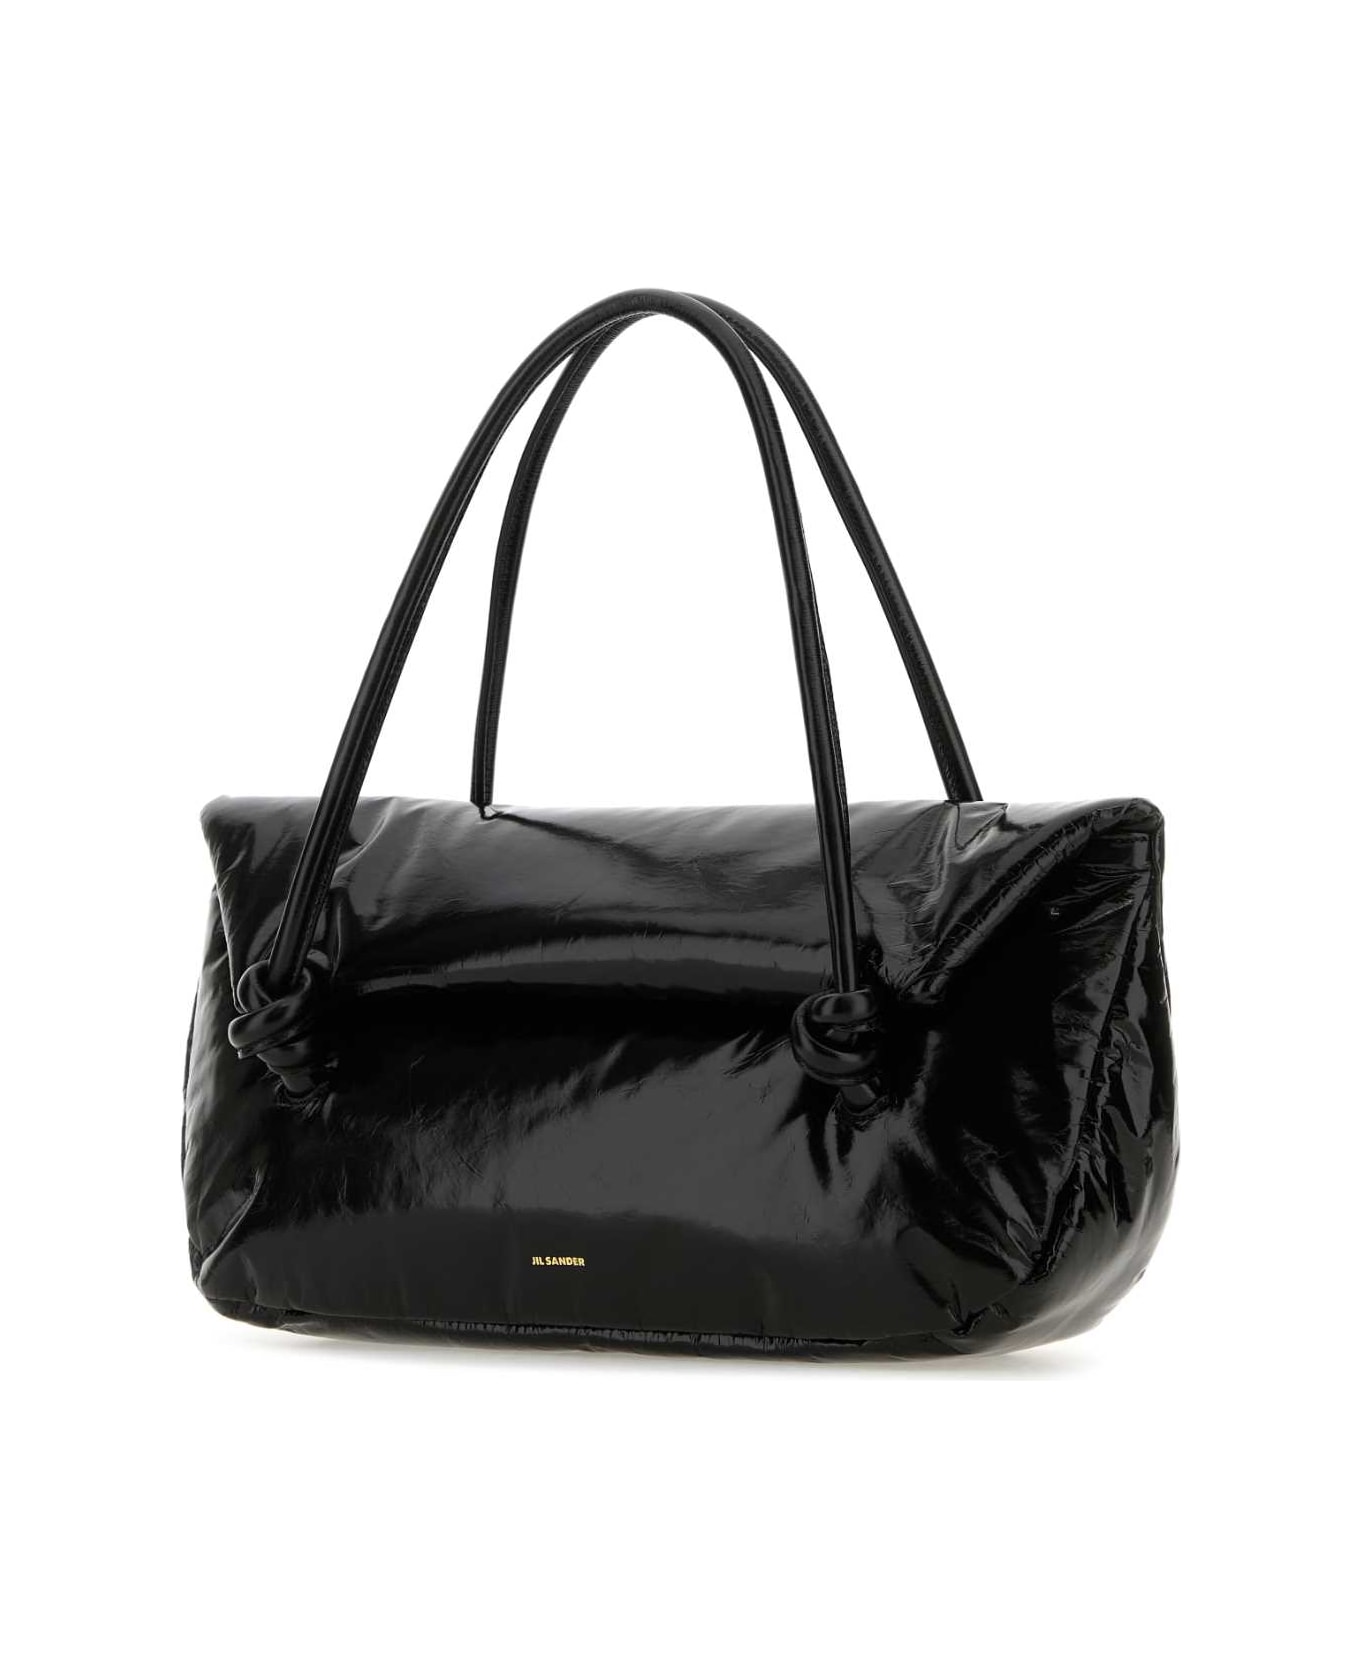 Jil Sander Black Leather Medium Knot Handle Handbag - 001